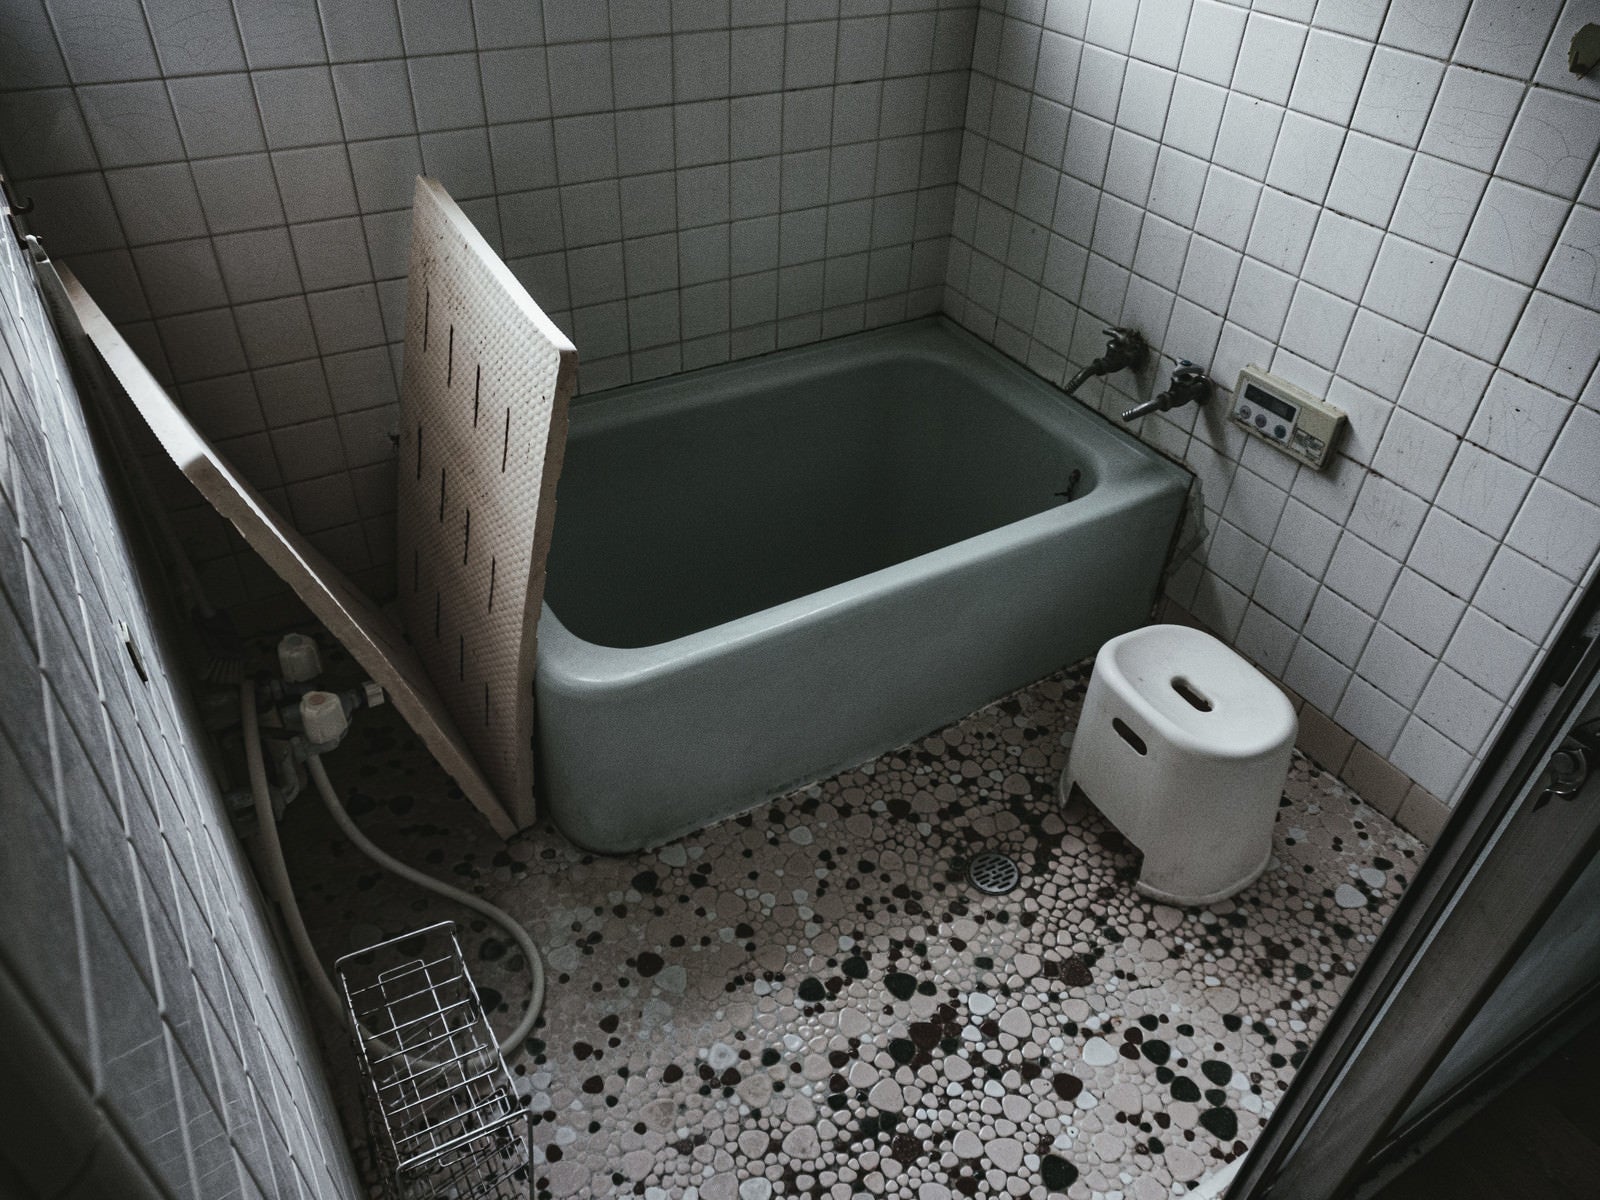 「昭和感漂うタイルのお風呂」の写真